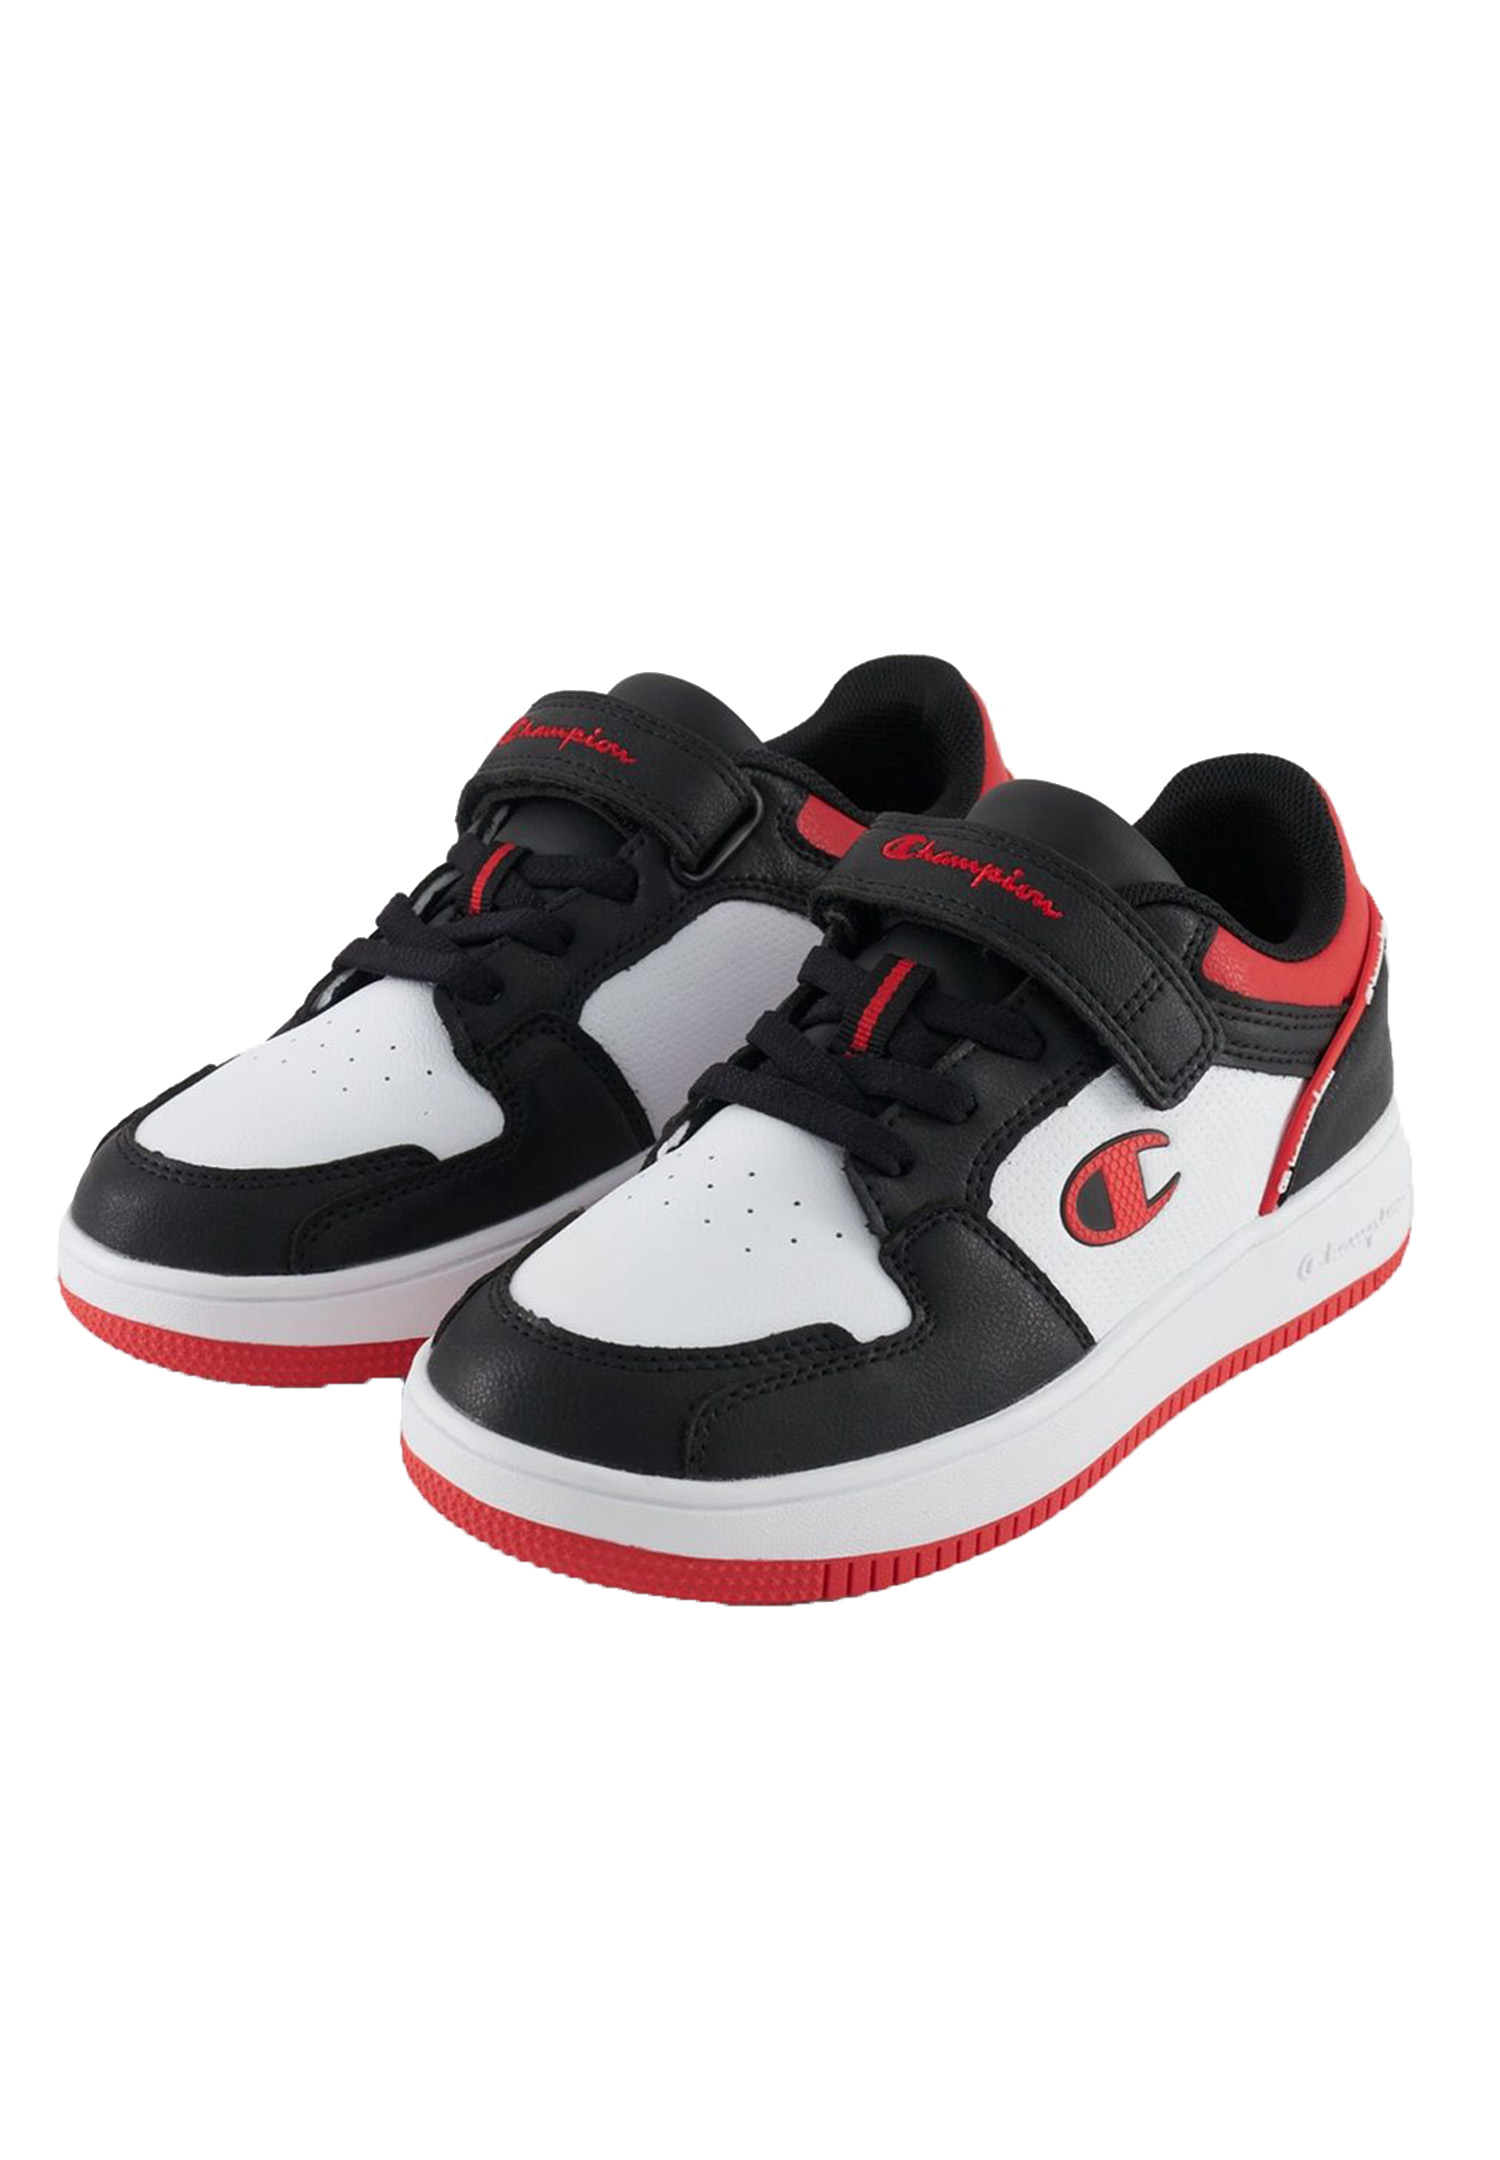 Champion REBOUND 2.0LOW Kinder Sneaker Unisex S32414-CHA-KK003 weiss/schwarz /rot